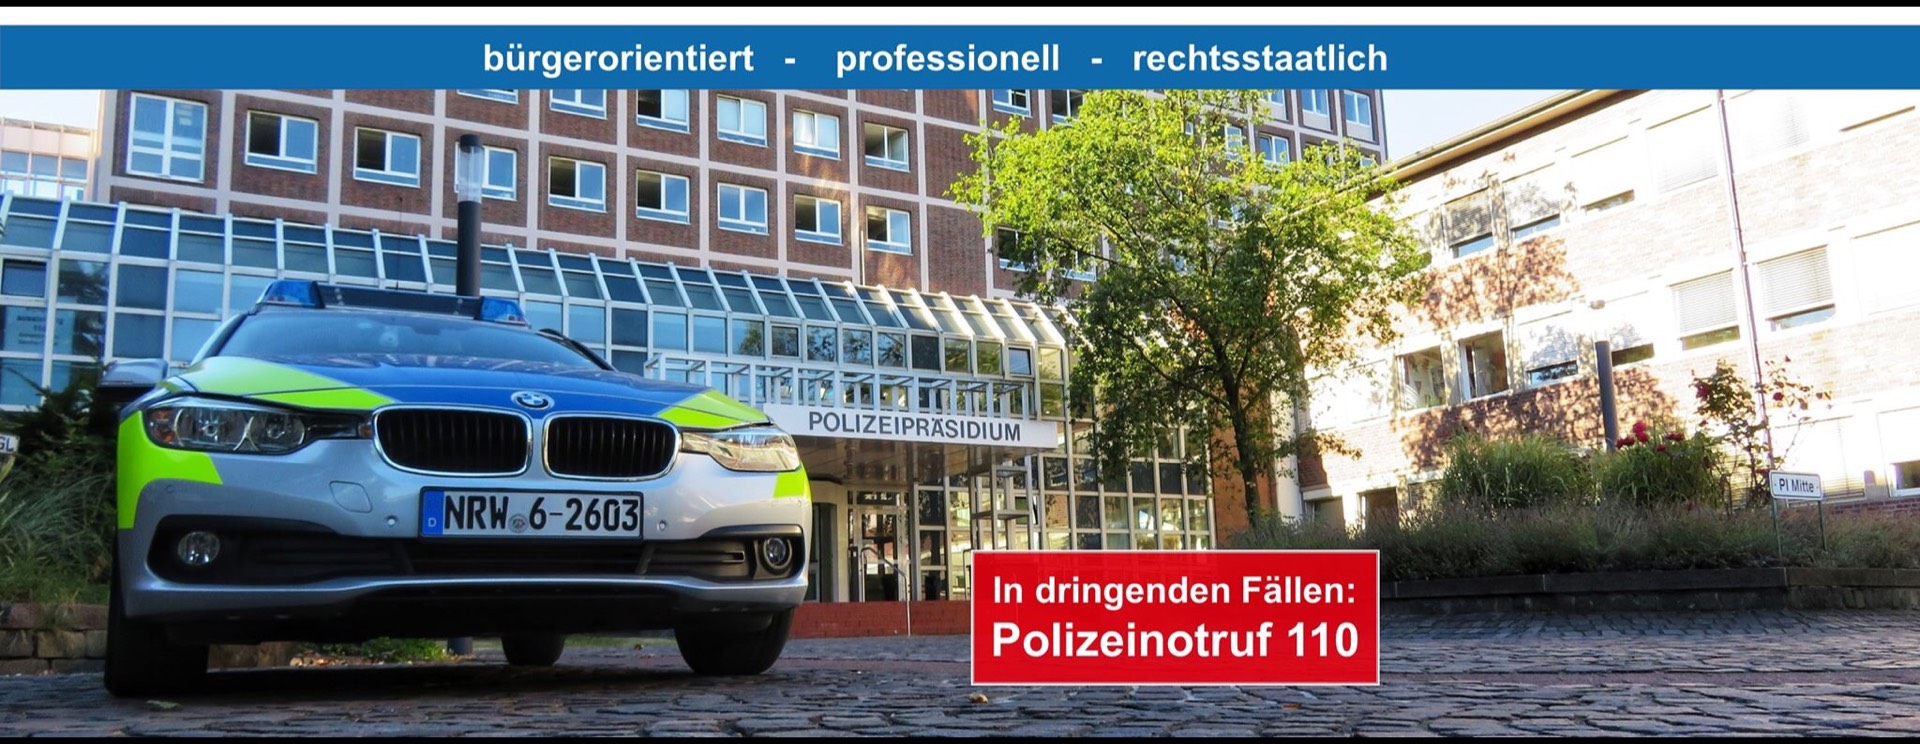 Bild 3 Polizeipräsidium Dortmund einschließlich Polizeiinspektionen und -wachen in Dortmund